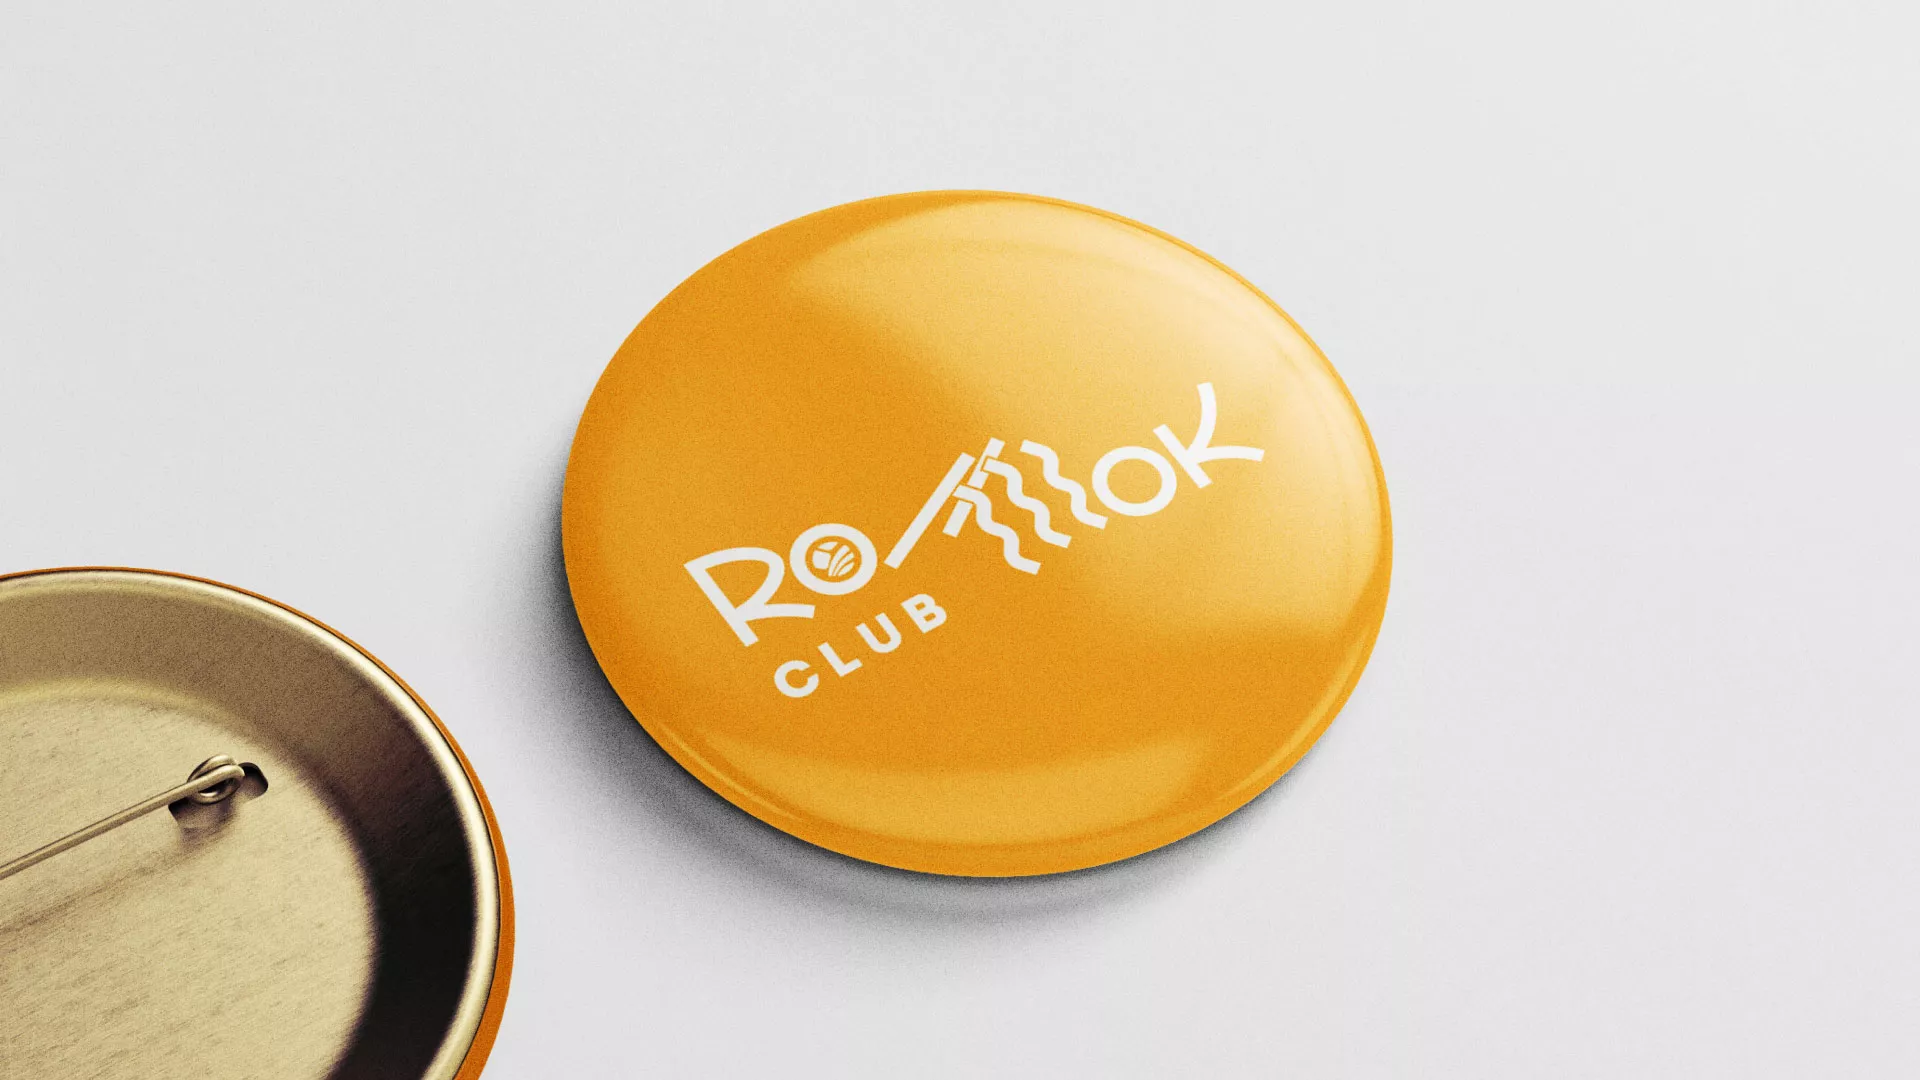 Создание логотипа суши-бара «Roll Wok Club» в Жуковке